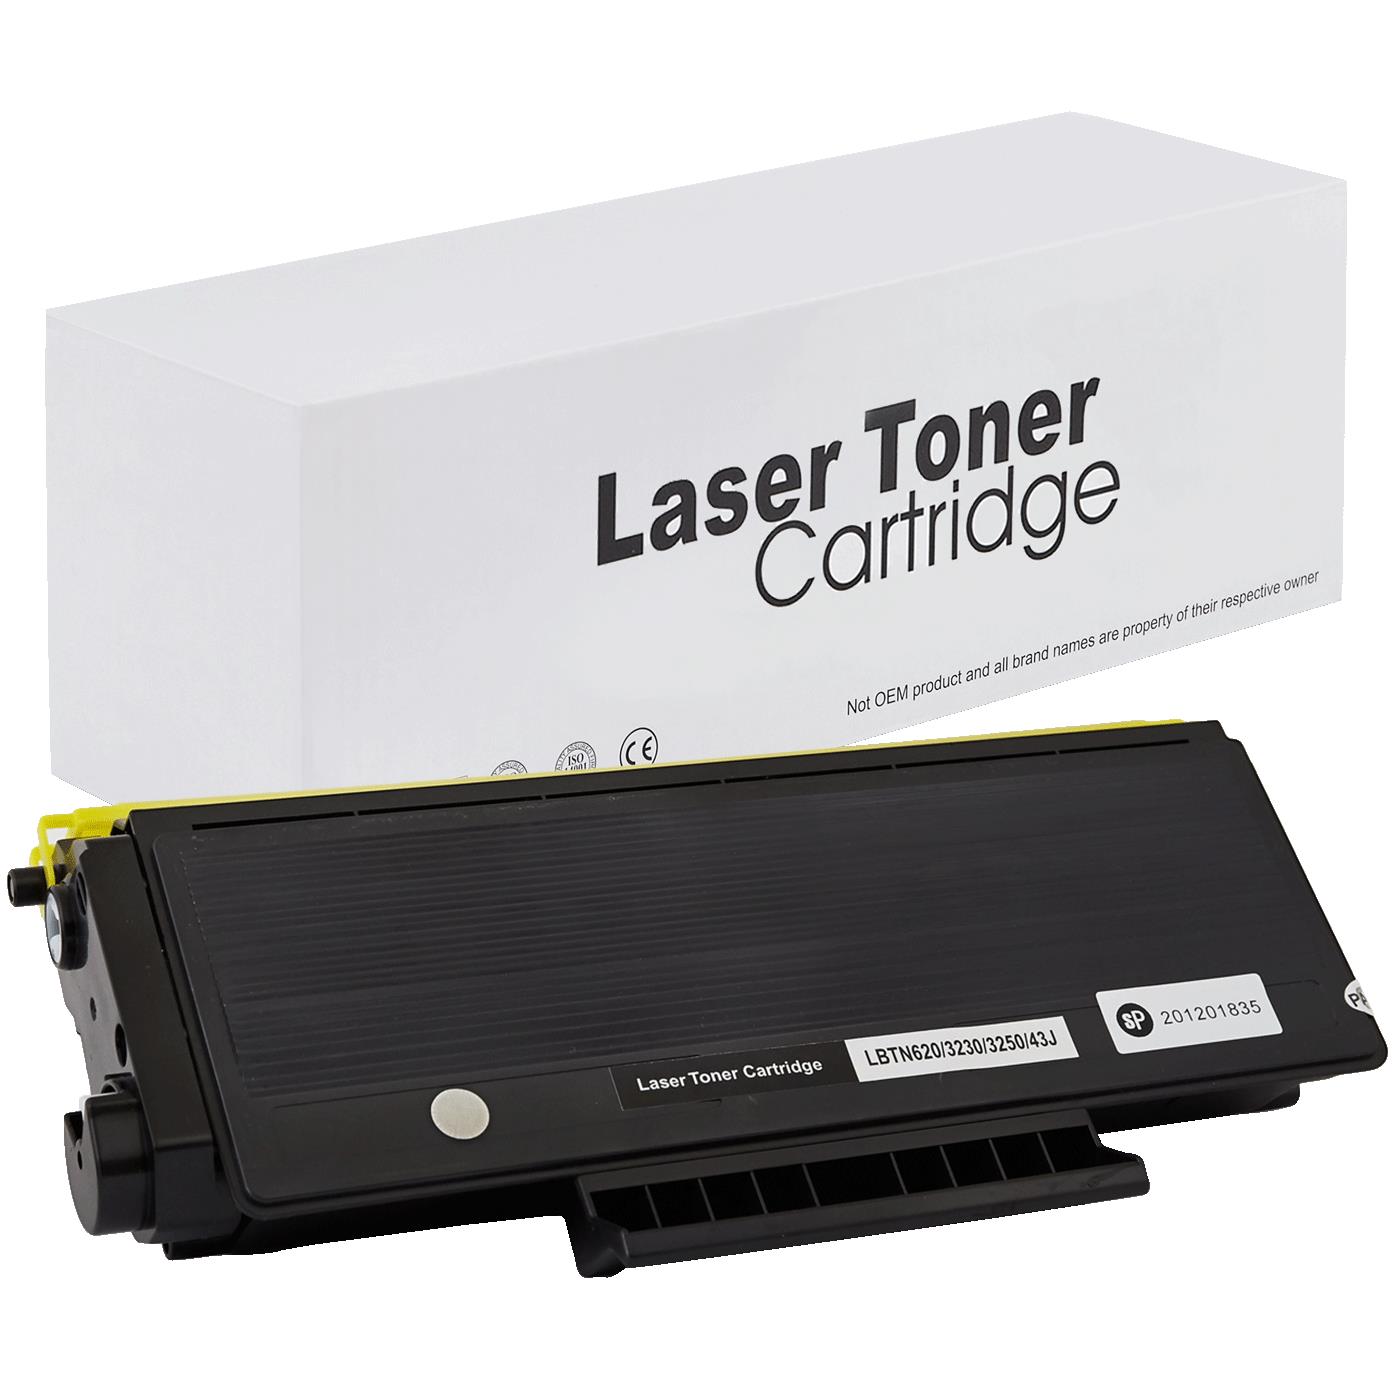 съвместима тонер касета за принтери и печатащи устройства на Brother DCP 8890 DW Toner BR-3230 | TN3230. Ниски цени, прецизно изпълнение, високо качество.